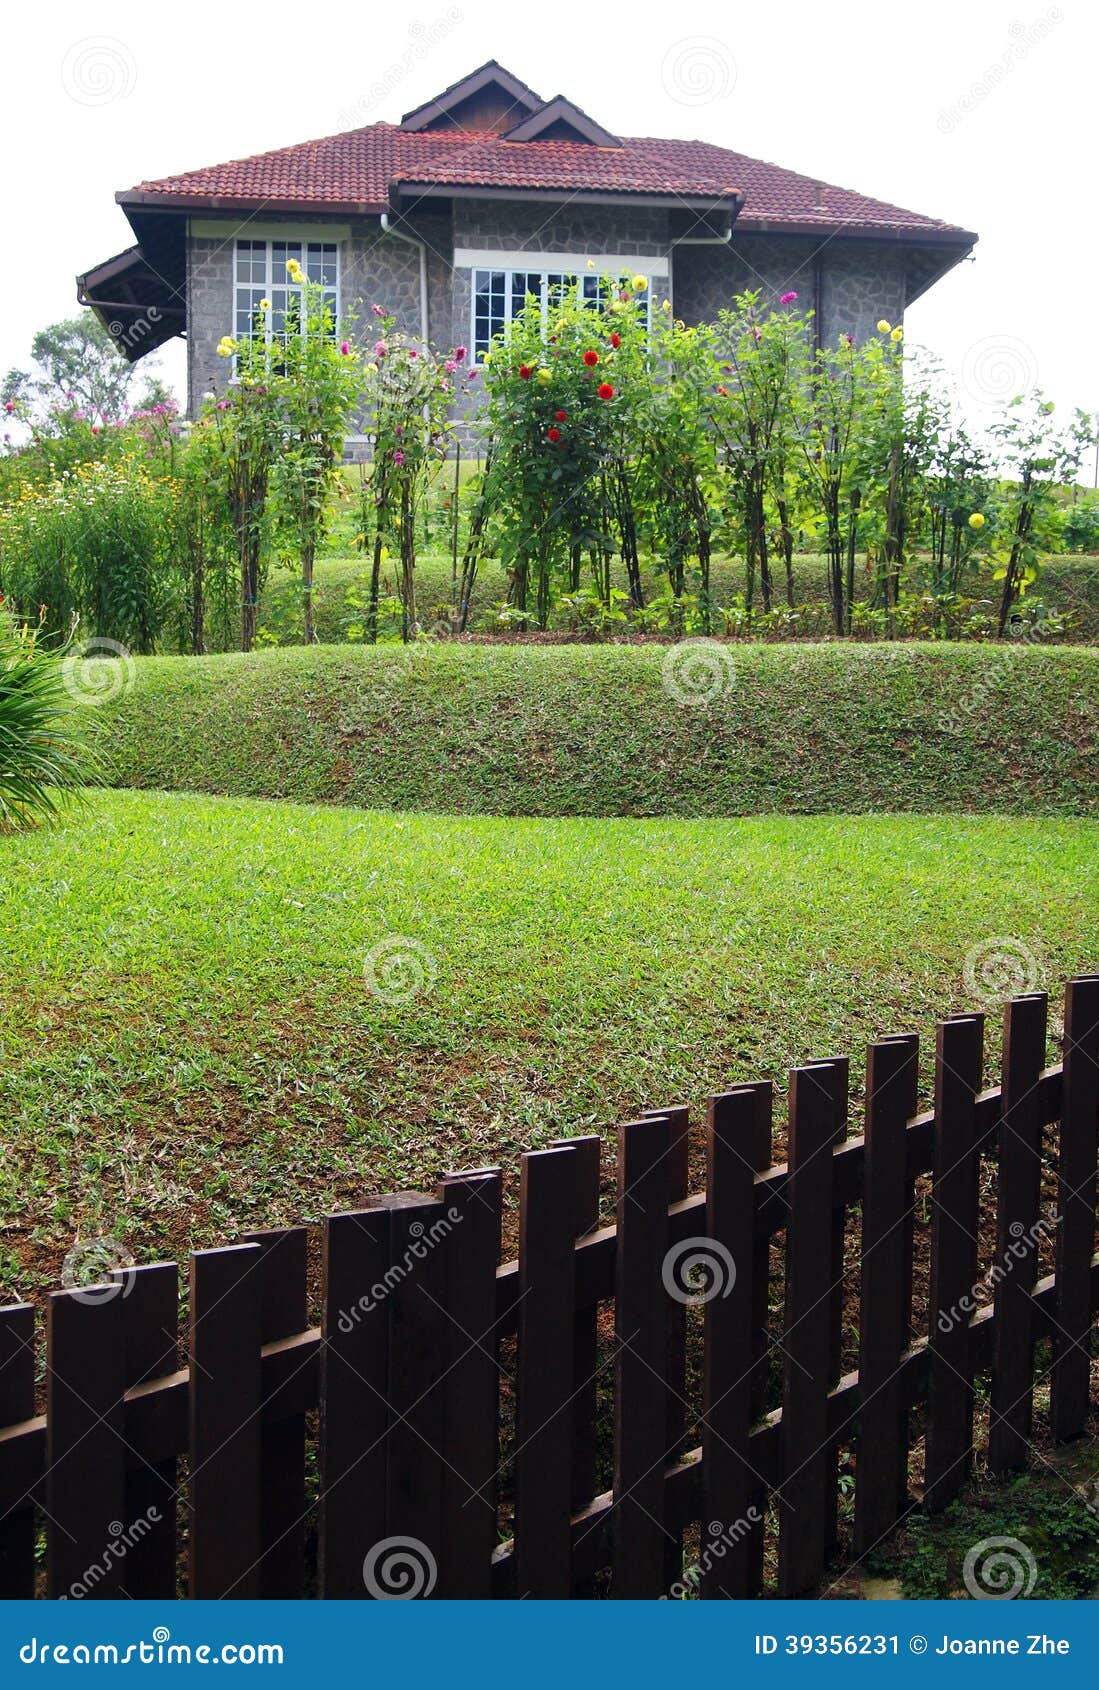 Casa de pedra velha com jardim e a cerca terraced. Uma fotografia que mostra a um estilo antigo a casa de pedra cinzenta velha no estilo colonial britânico, com jardim do terraço no montanhês e em uma cerca de madeira marrom do jardim.  Imagem do conceito para o projeto do jardim ao longo de um lado inclinado do monte.   O lugar está no recurso das montanhas do monte de Fraser, Pahang, Malásia, 3Sudeste Asiático.